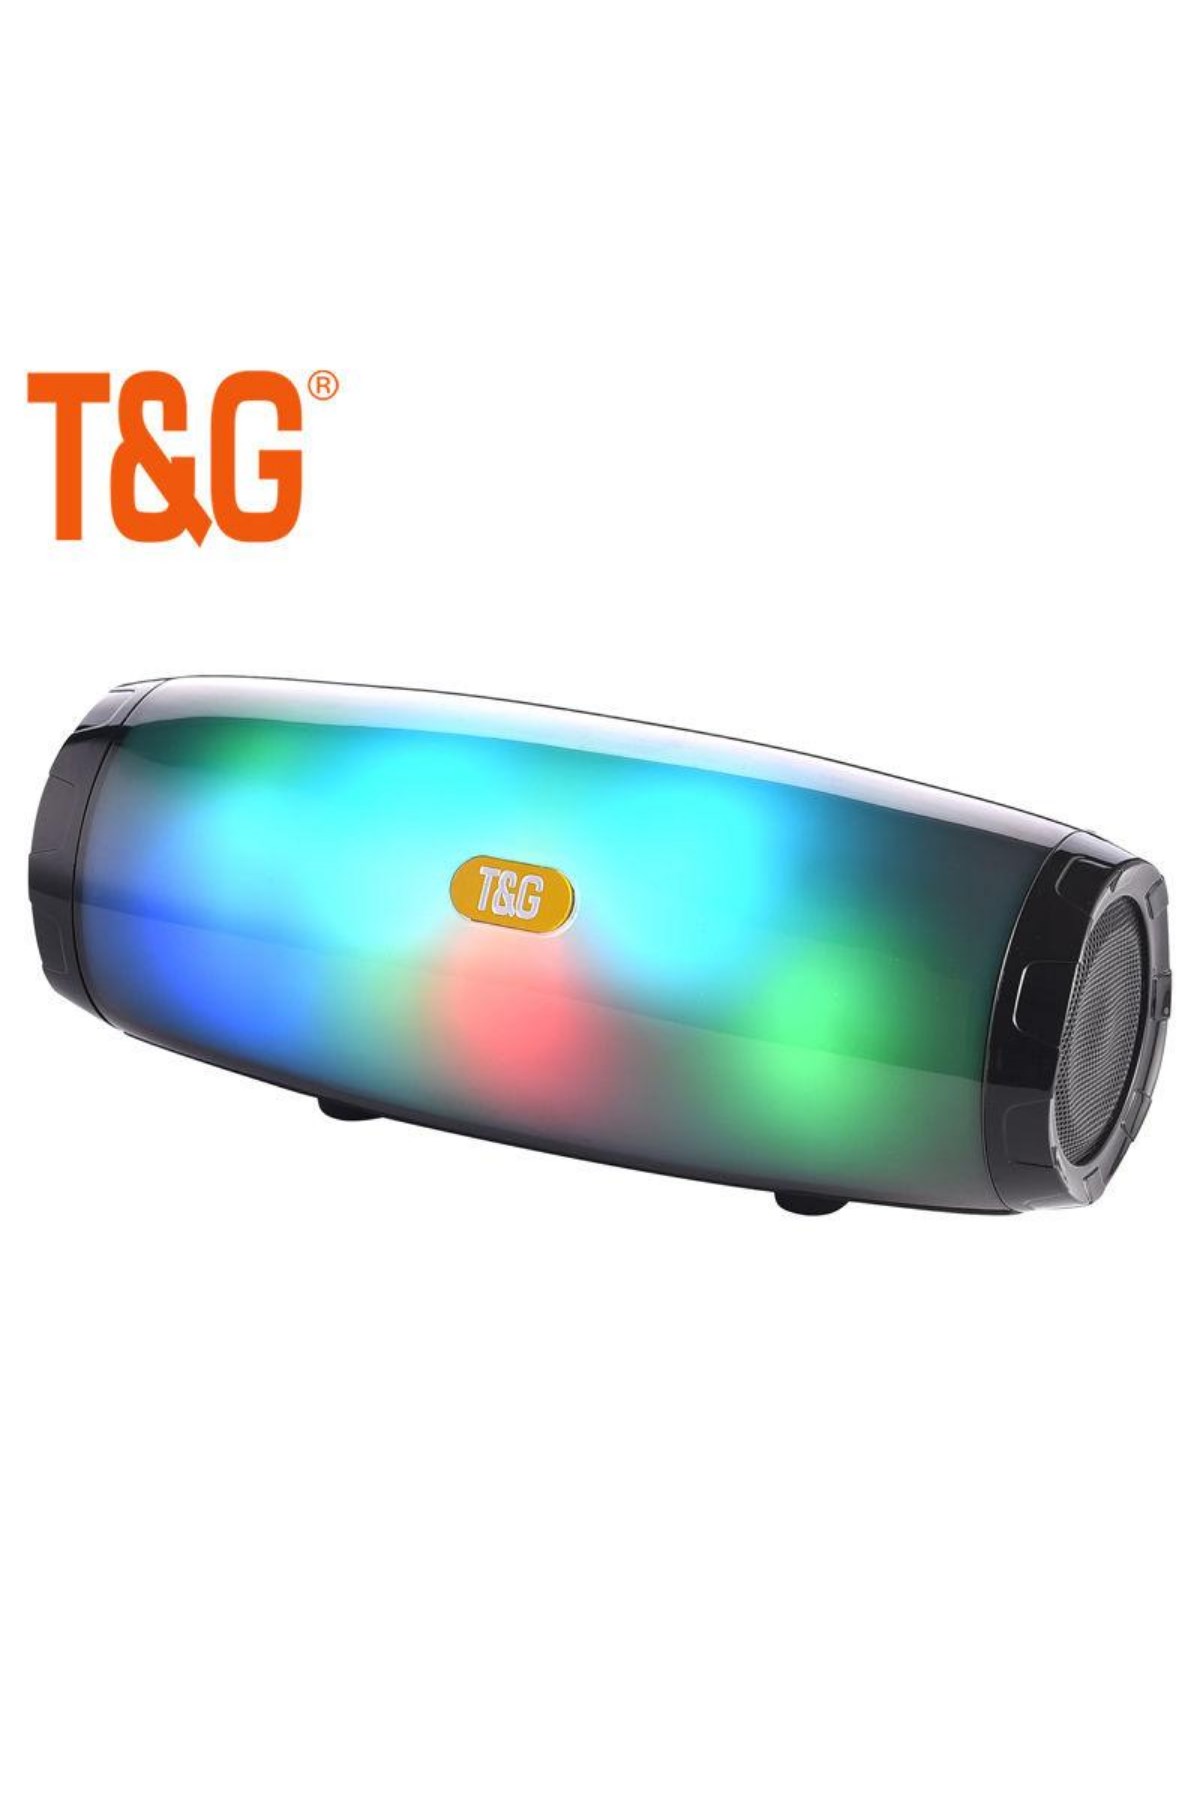 Orijinal T&G 165 Işıklı Speaker Kablosuz Bluetooth Hoparlör Ses Bombası